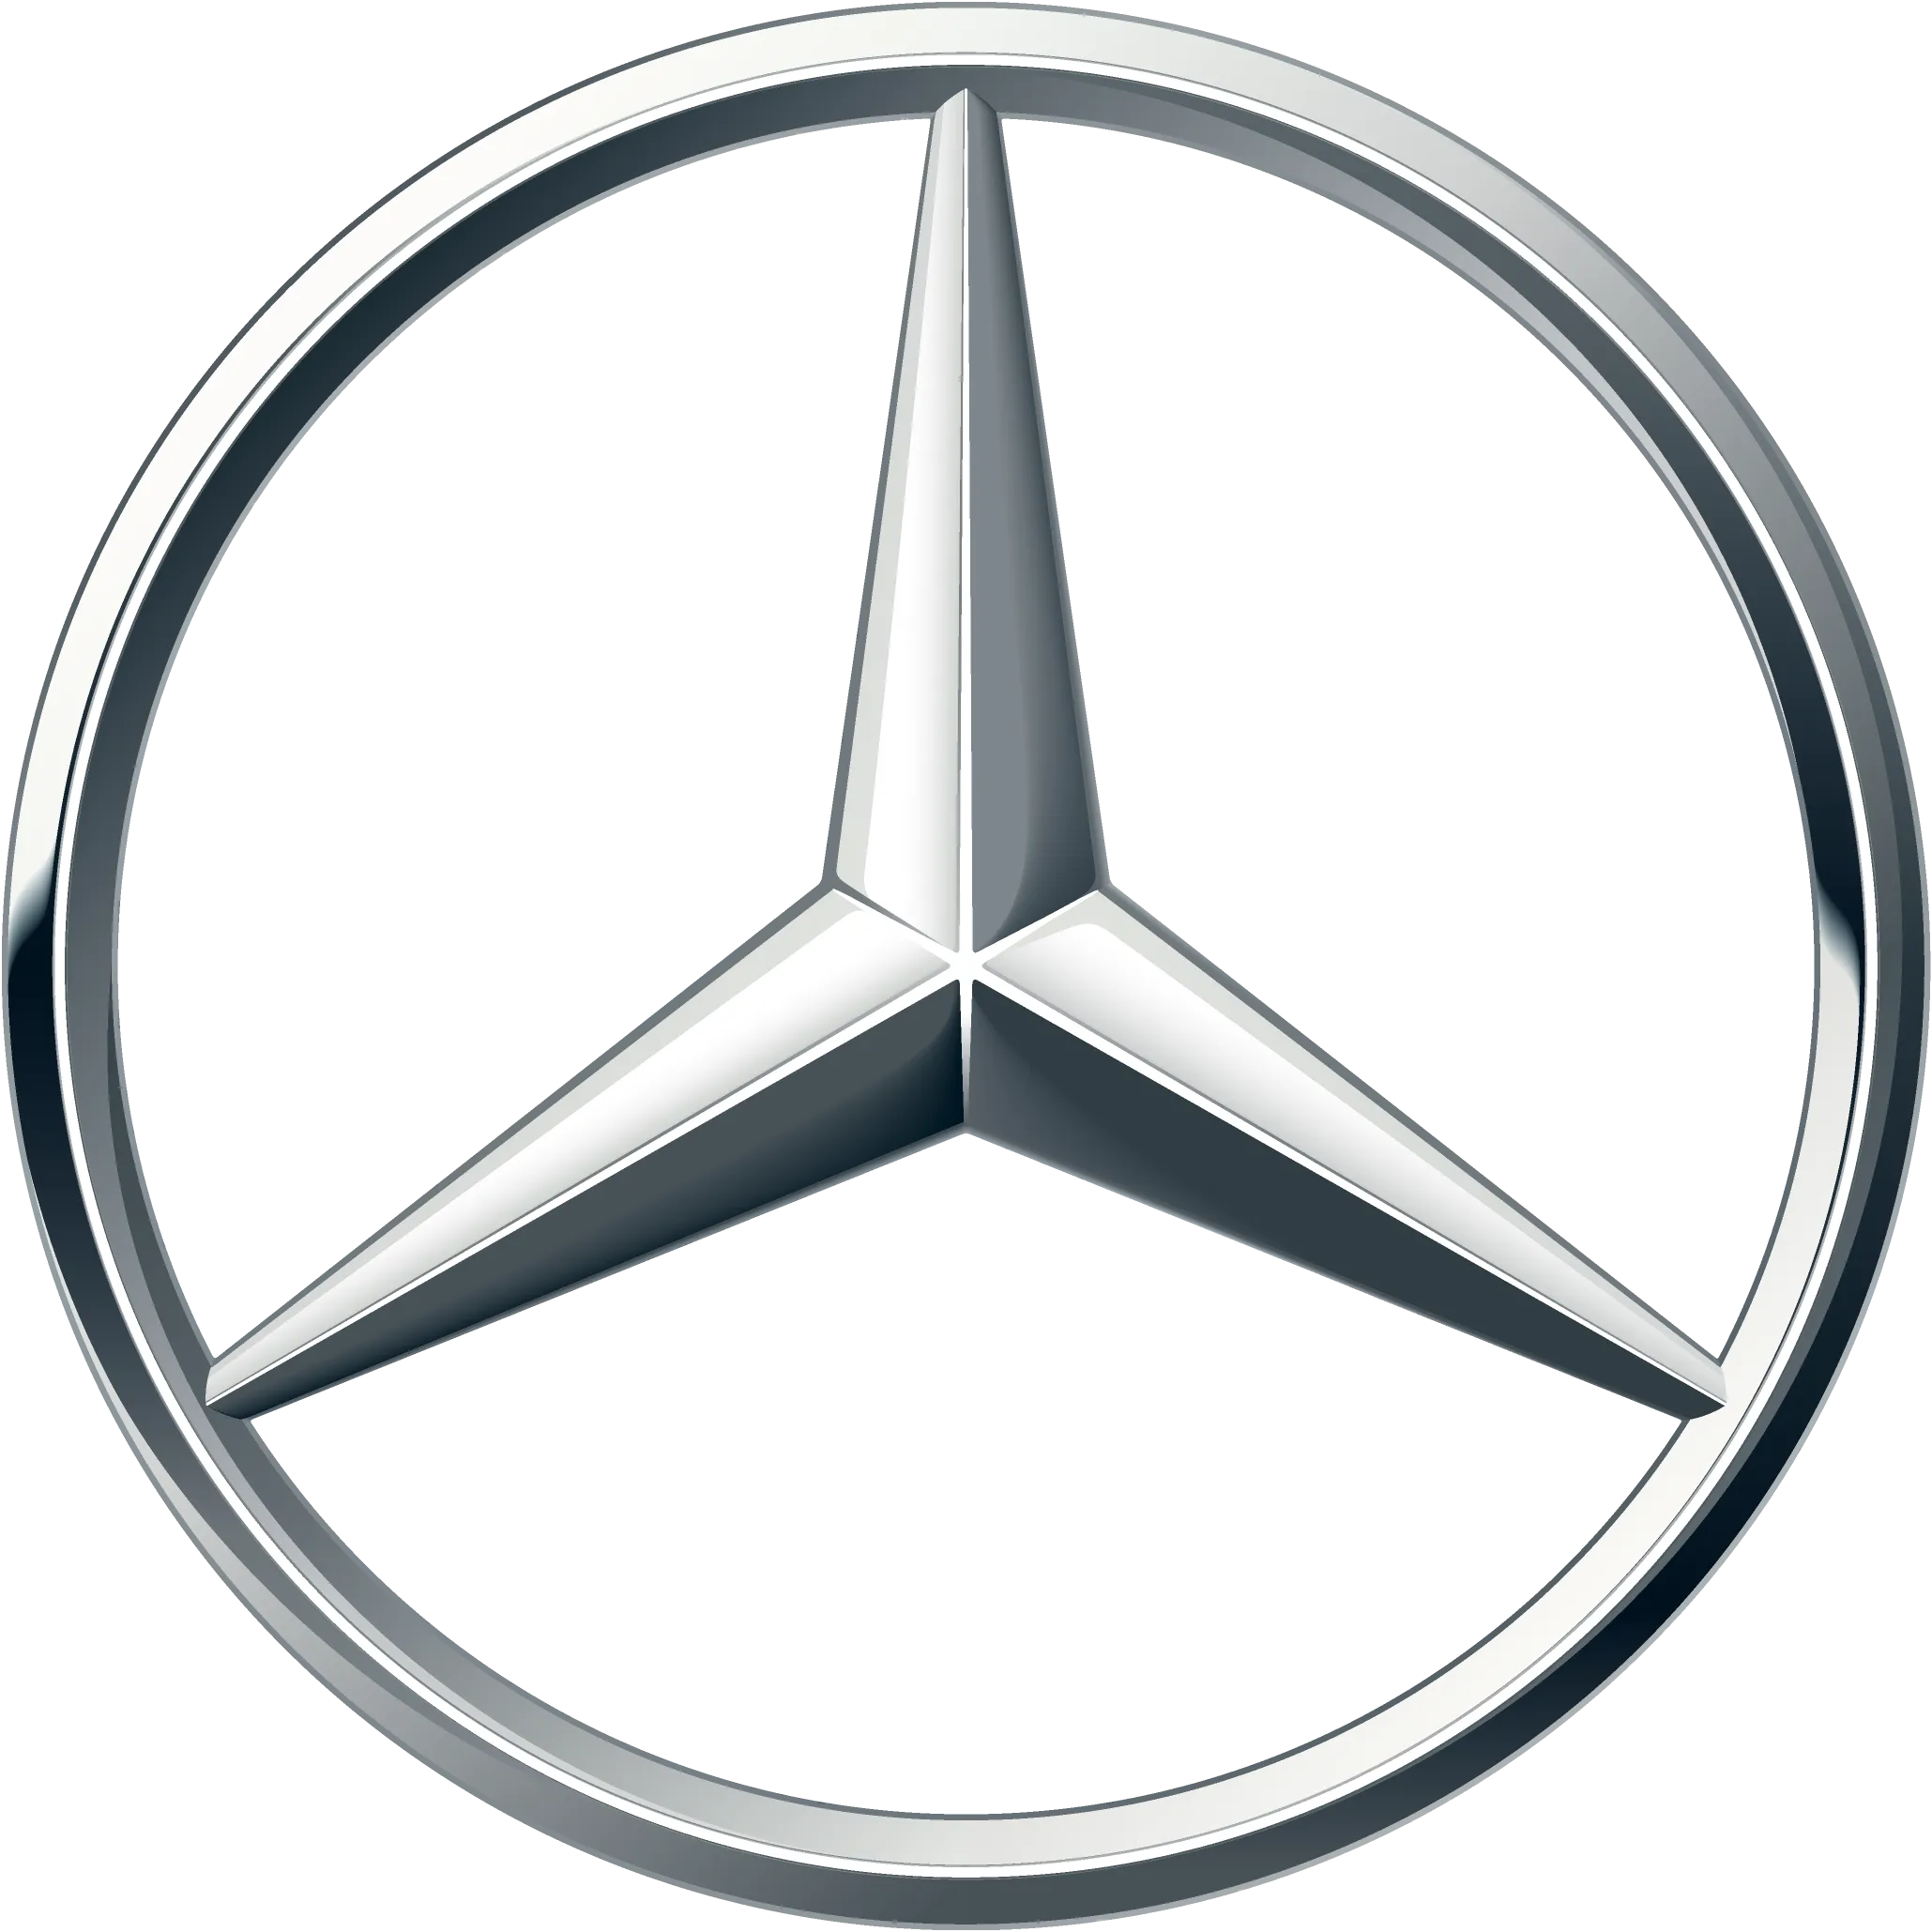 Logo von Mercedes